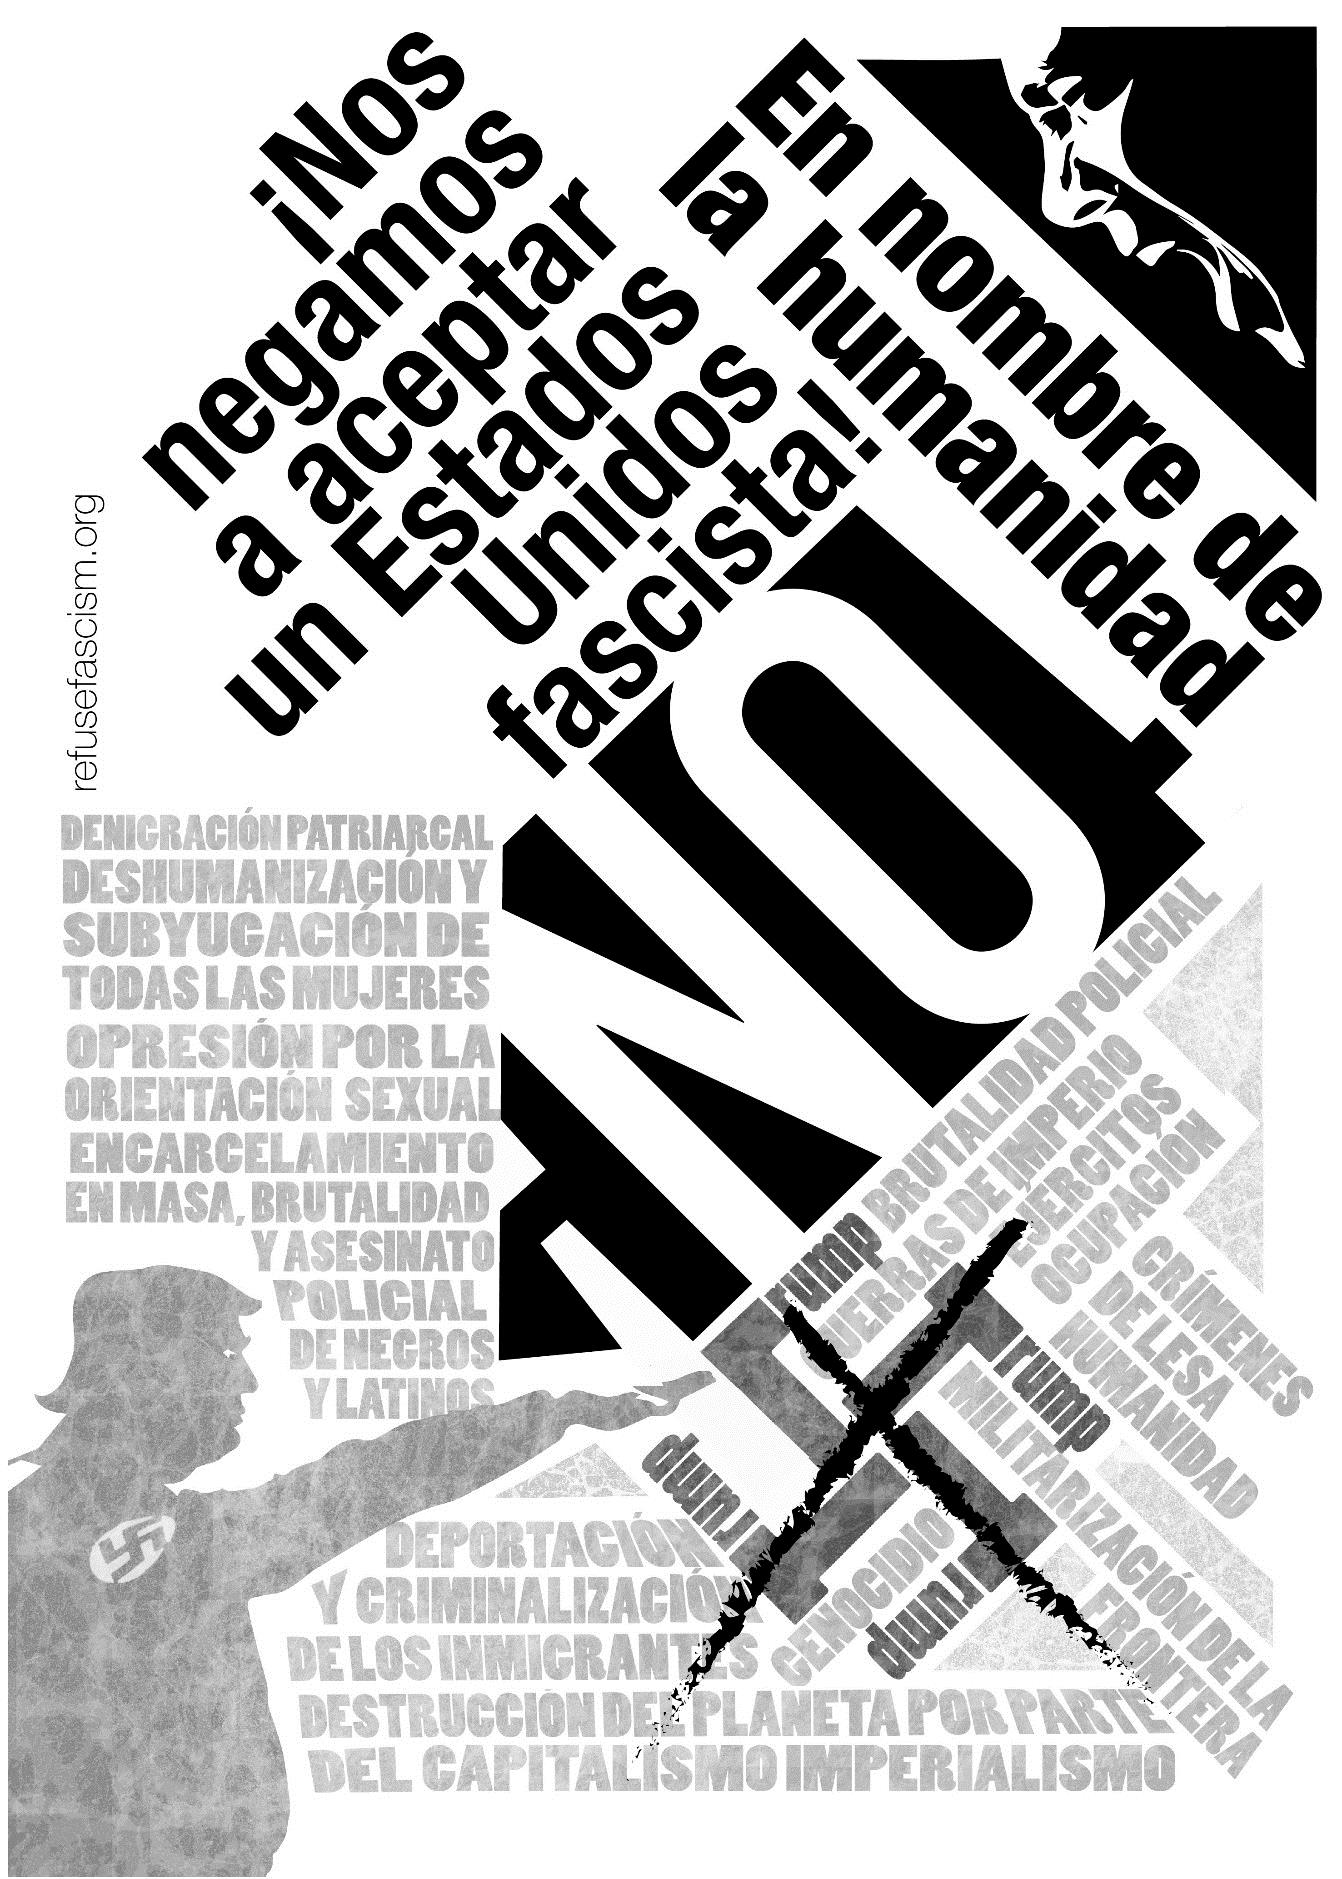 Graphic image from Grupo Comunista Revolucionario, Colombia